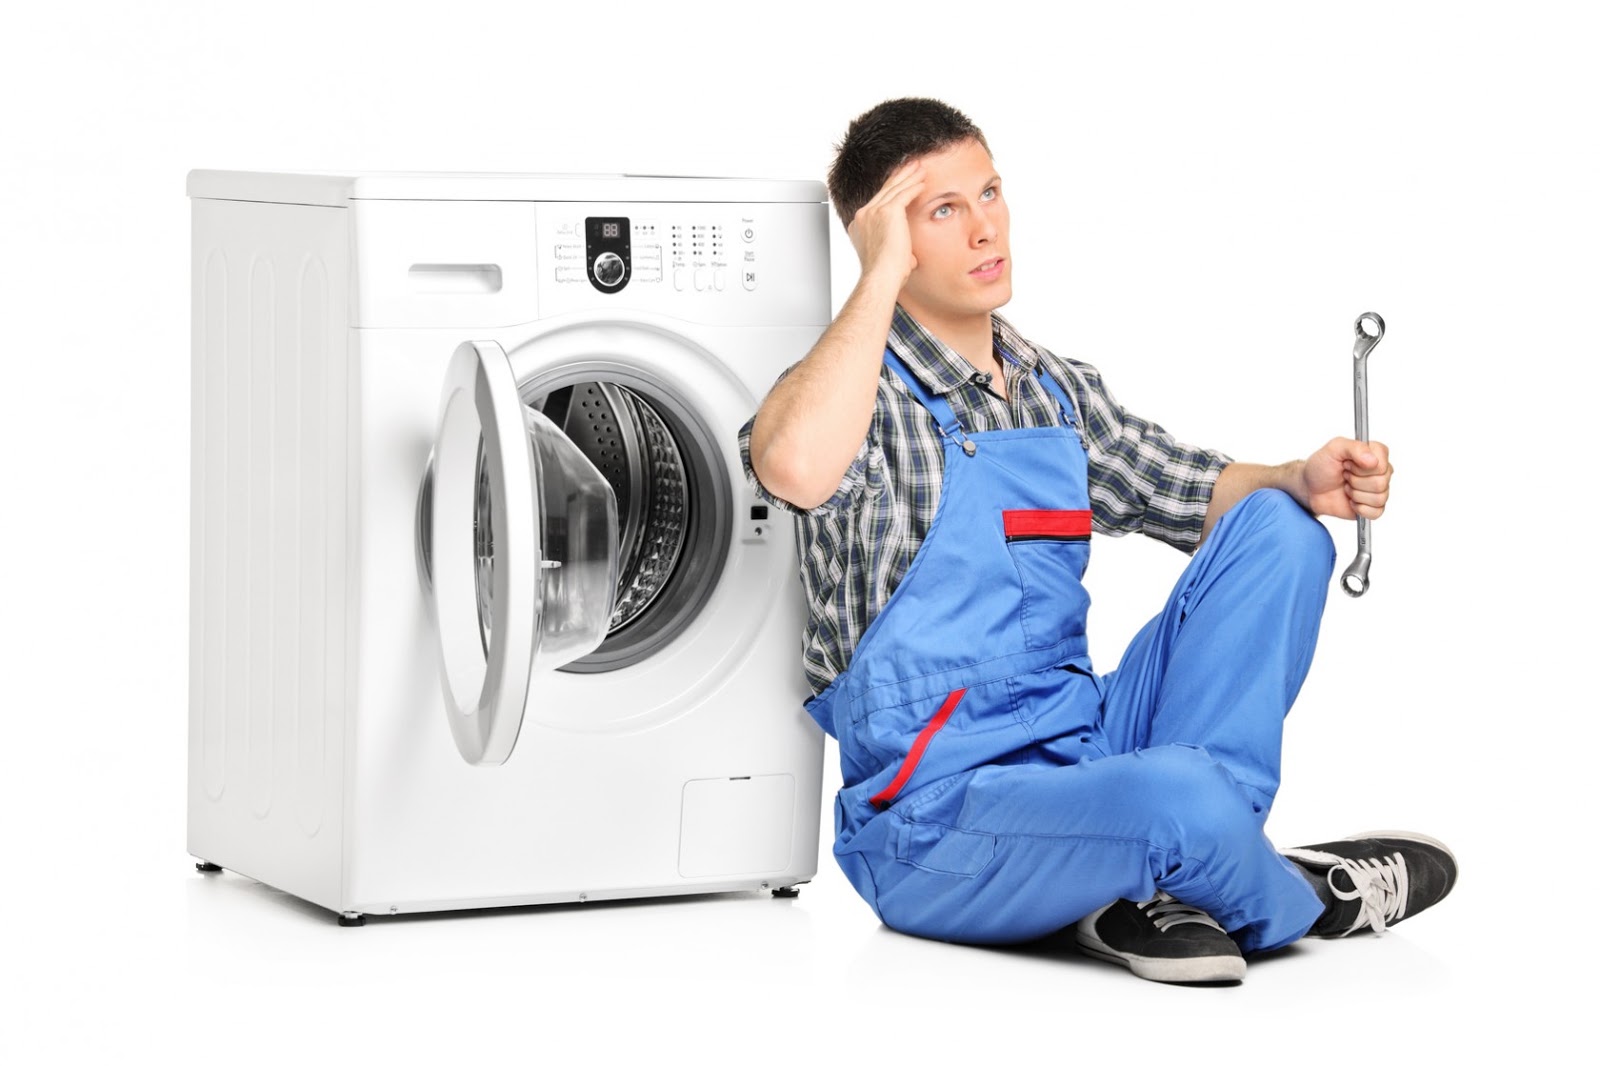 Máy giặt samsung không vắt được nguyên nhân do đâu? Cách xử lý hiệu quả tại nhà